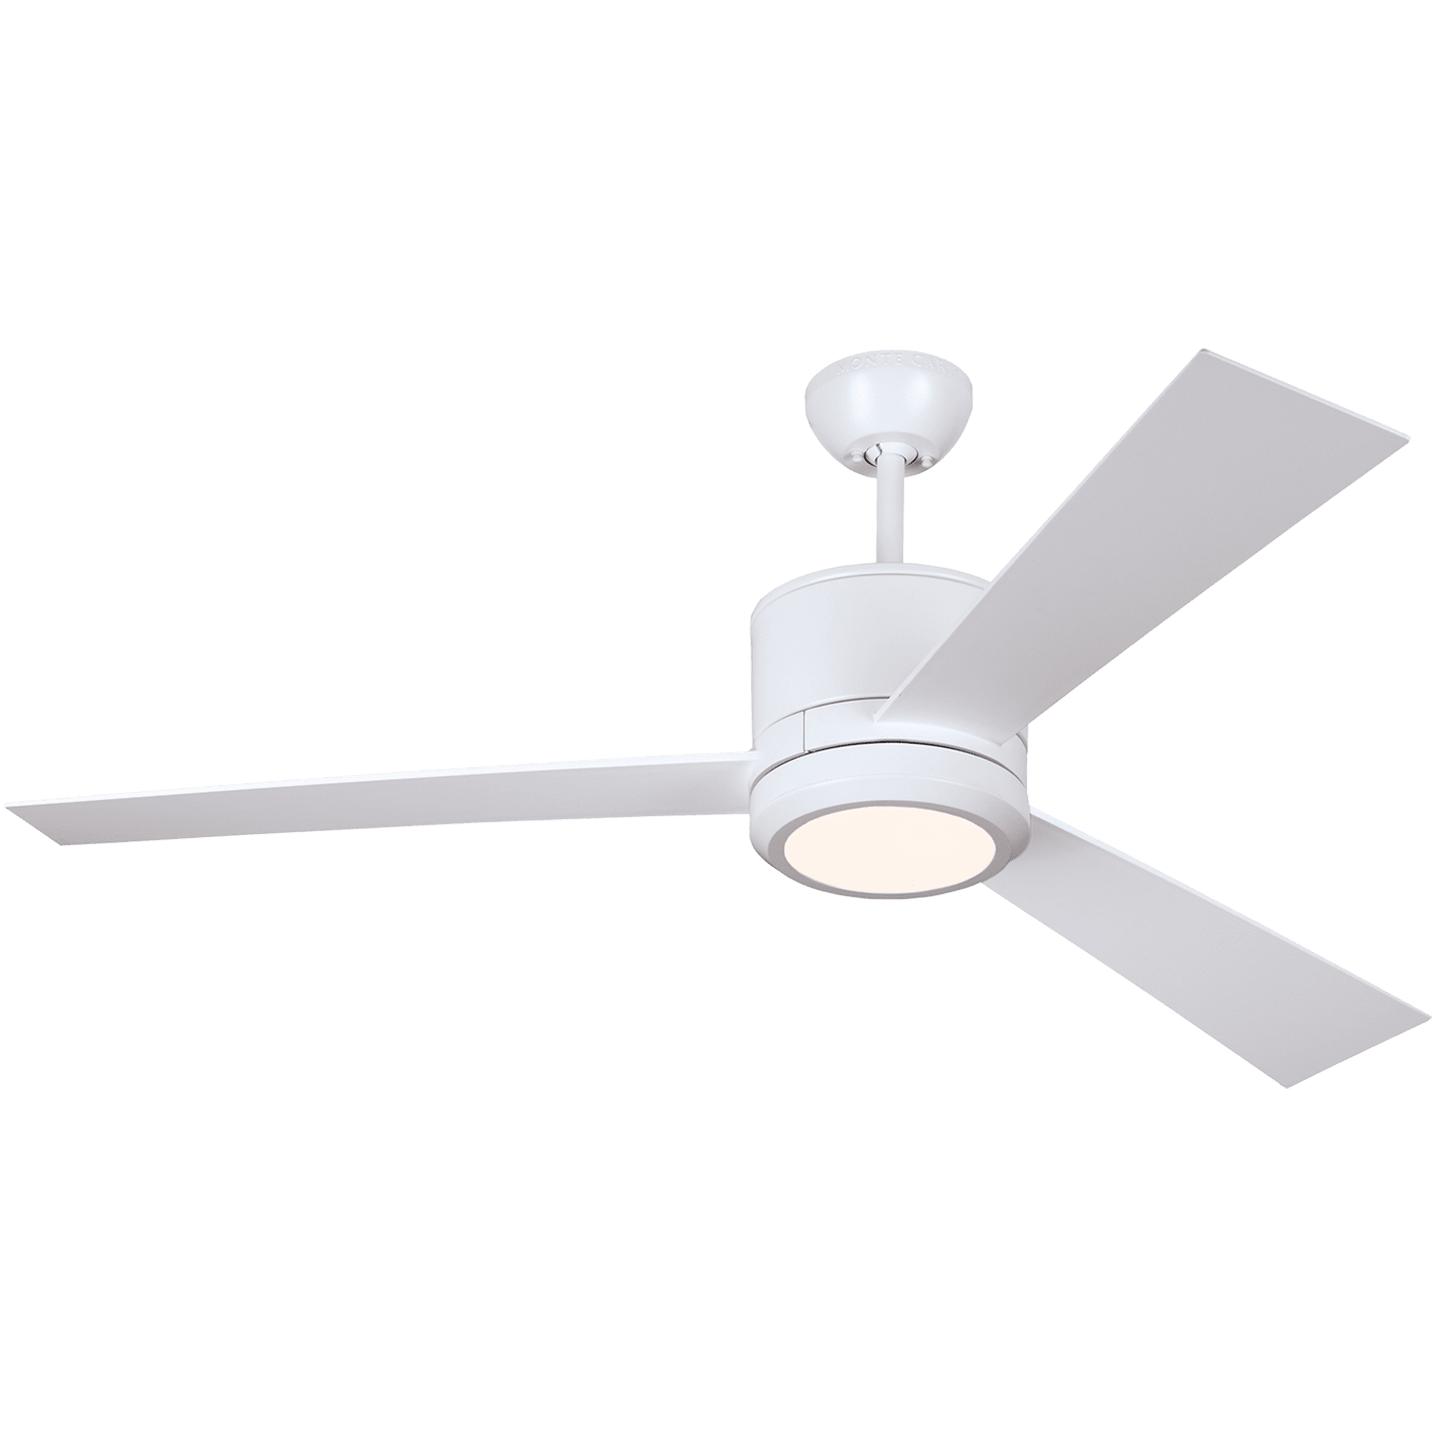 Купить Потолочный вентилятор Vision 52" LED Ceiling Fan в интернет-магазине roooms.ru